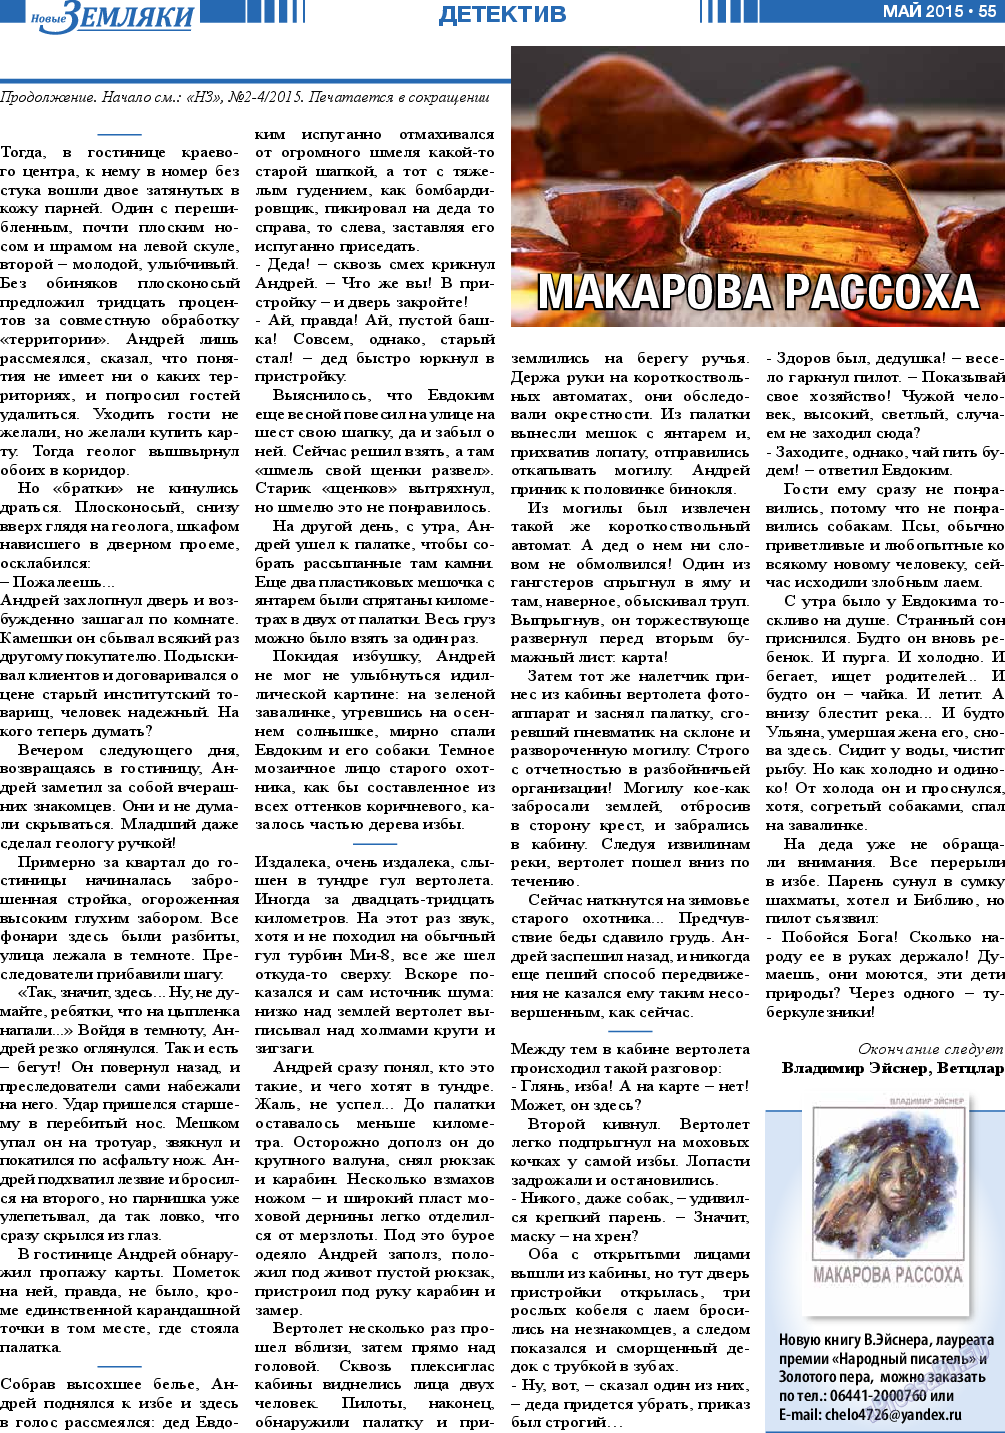 Новые Земляки, газета. 2015 №5 стр.55